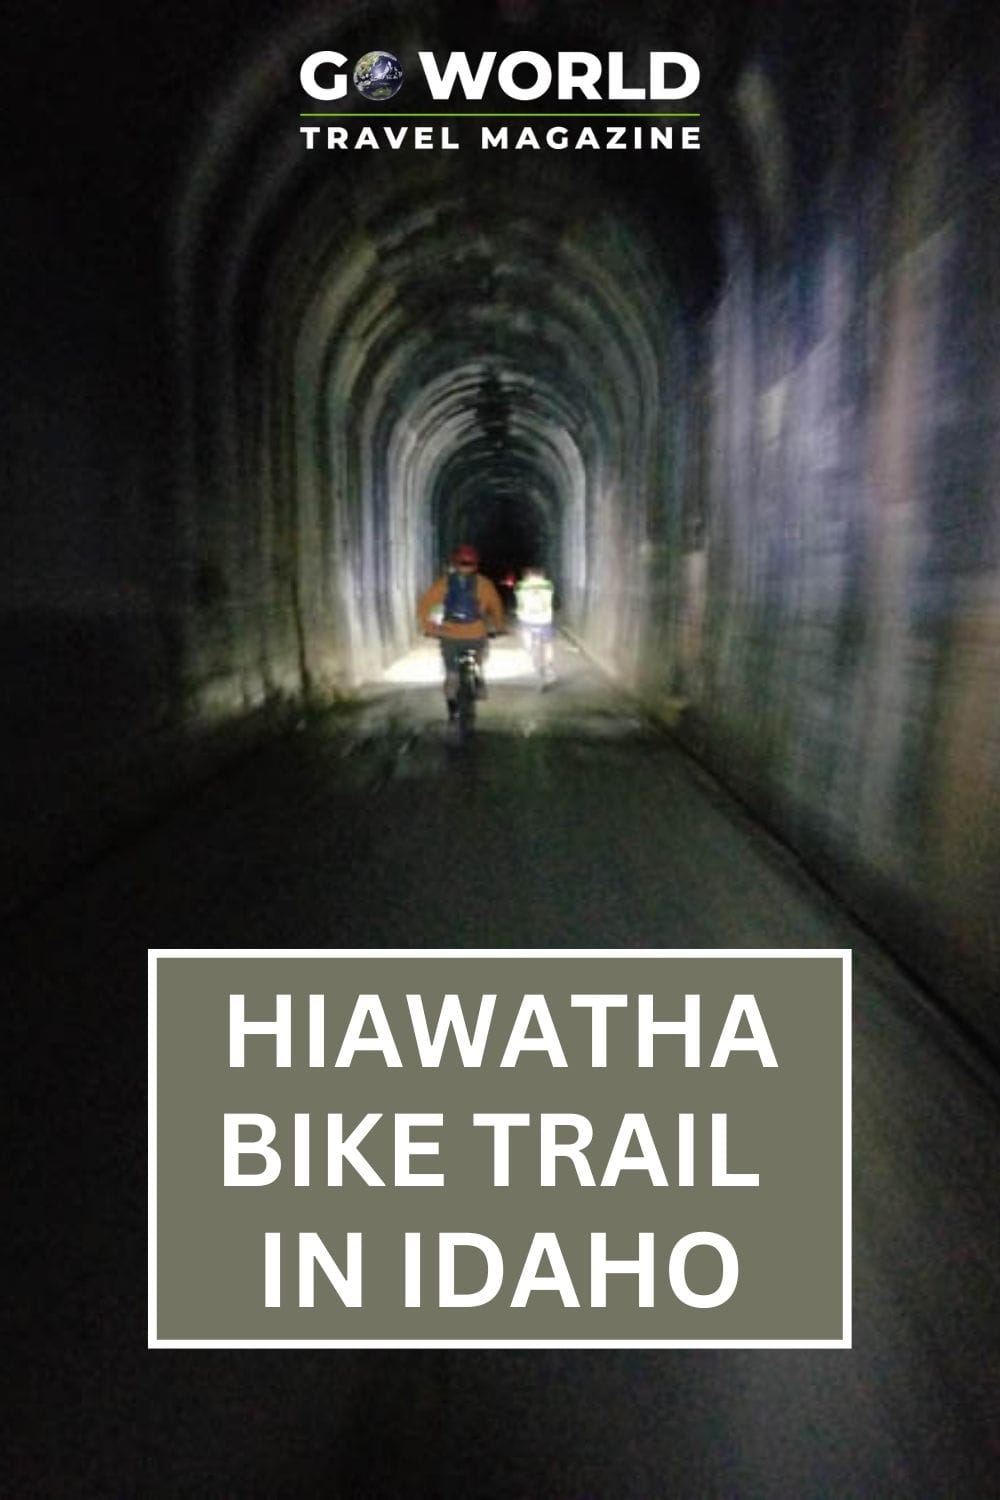 Panduan mendalam untuk bersepeda di jalur sepeda Hiawatha di Idaho utara, termasuk apa yang diharapkan, persewaan sepeda, dan sejarah jalur tersebut.  #hiawathabiketrailidaho